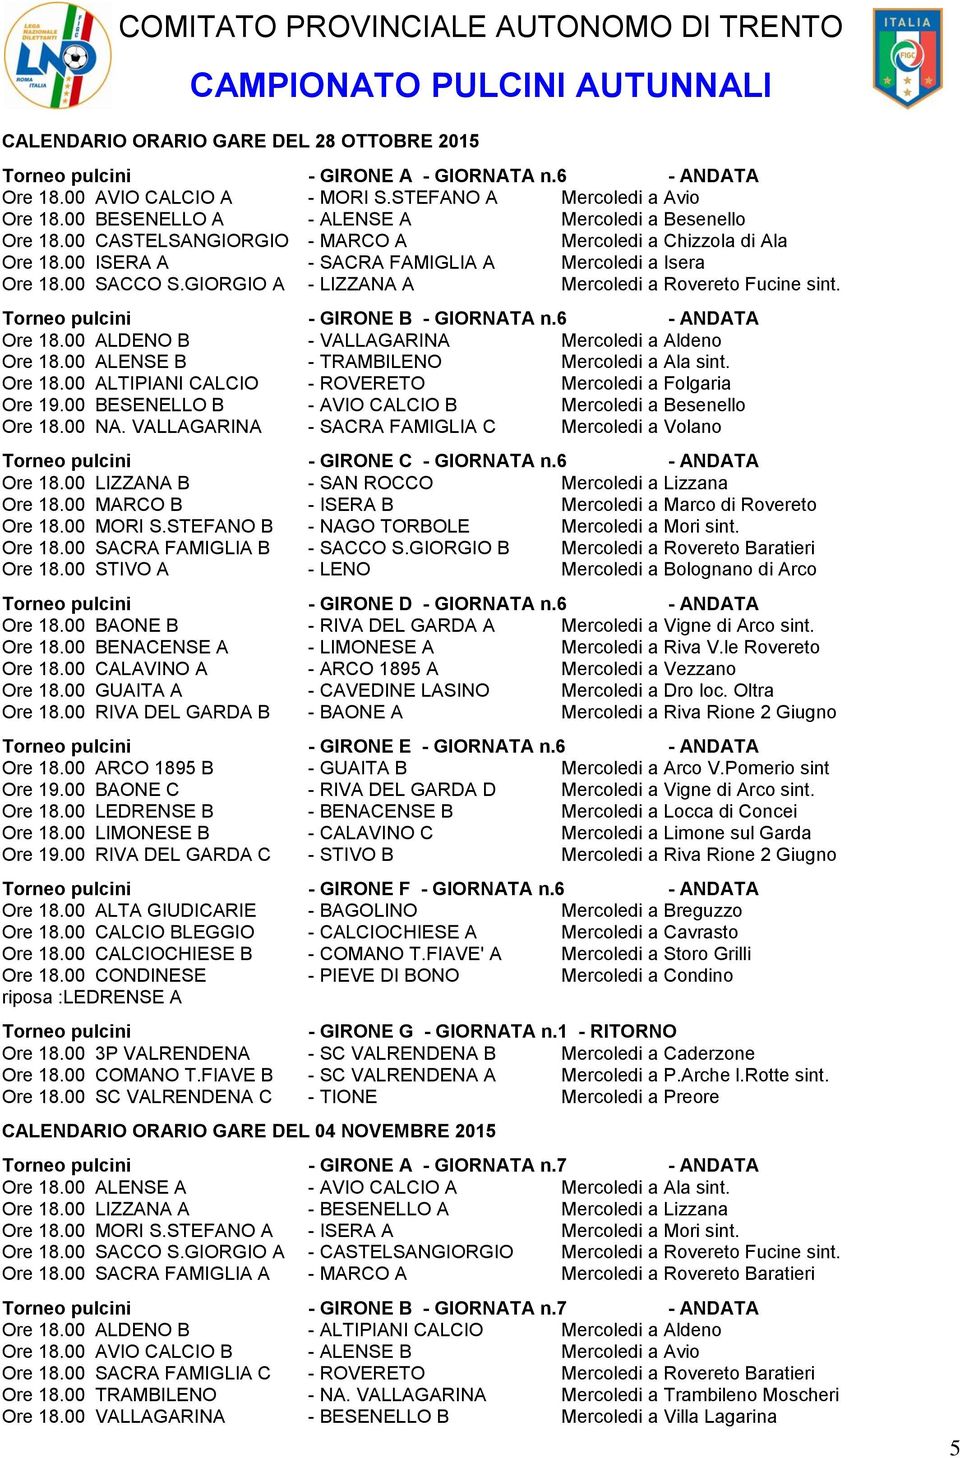 GIORGIO A - LIZZANA A Mercoledi a Rovereto Fucine sint. Torneo pulcini - GIRONE B - GIORNATA n.6 - ANDATA Ore 18.00 ALDENO B - VALLAGARINA Mercoledi a Aldeno Ore 18.